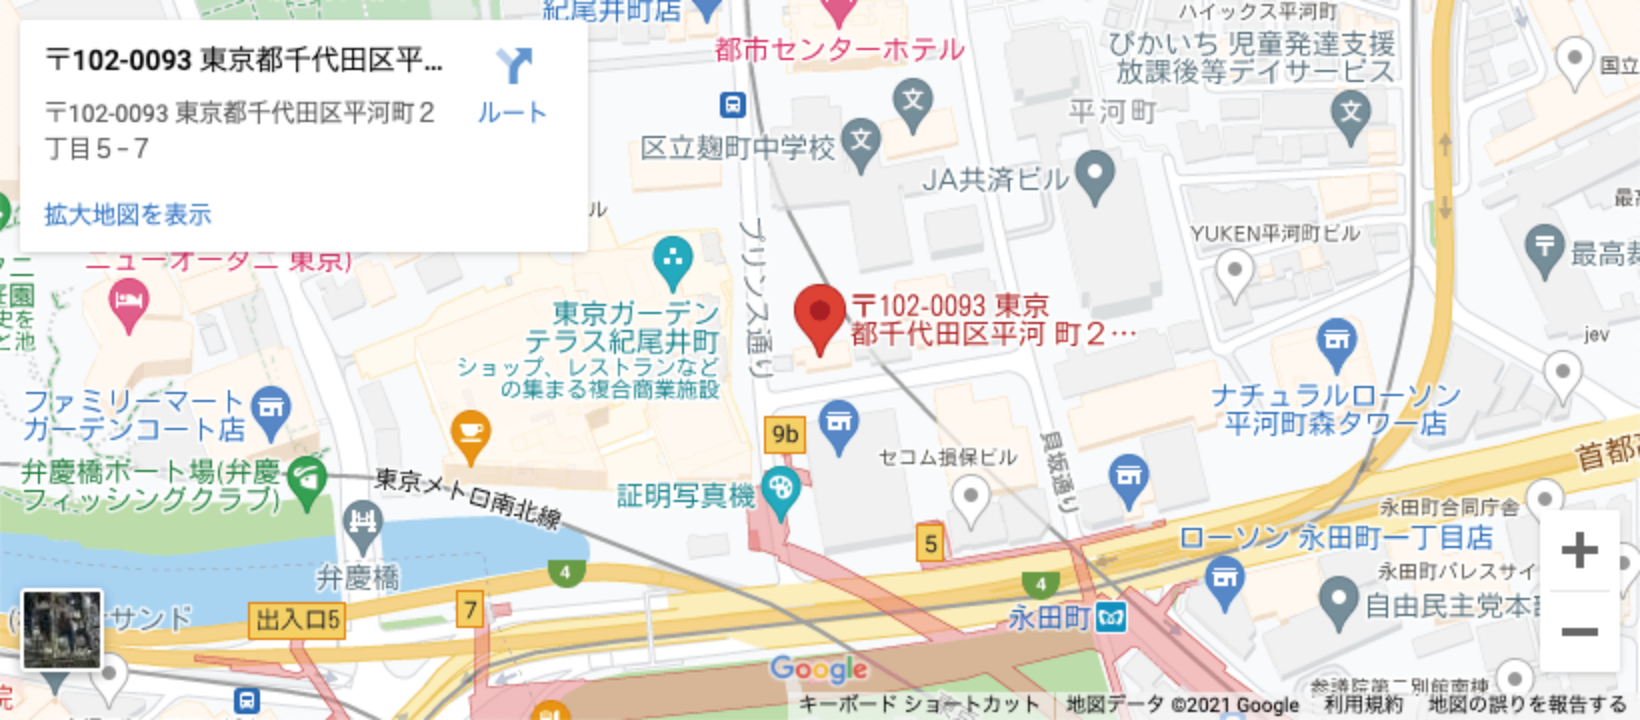 Alliance Tokyo Map